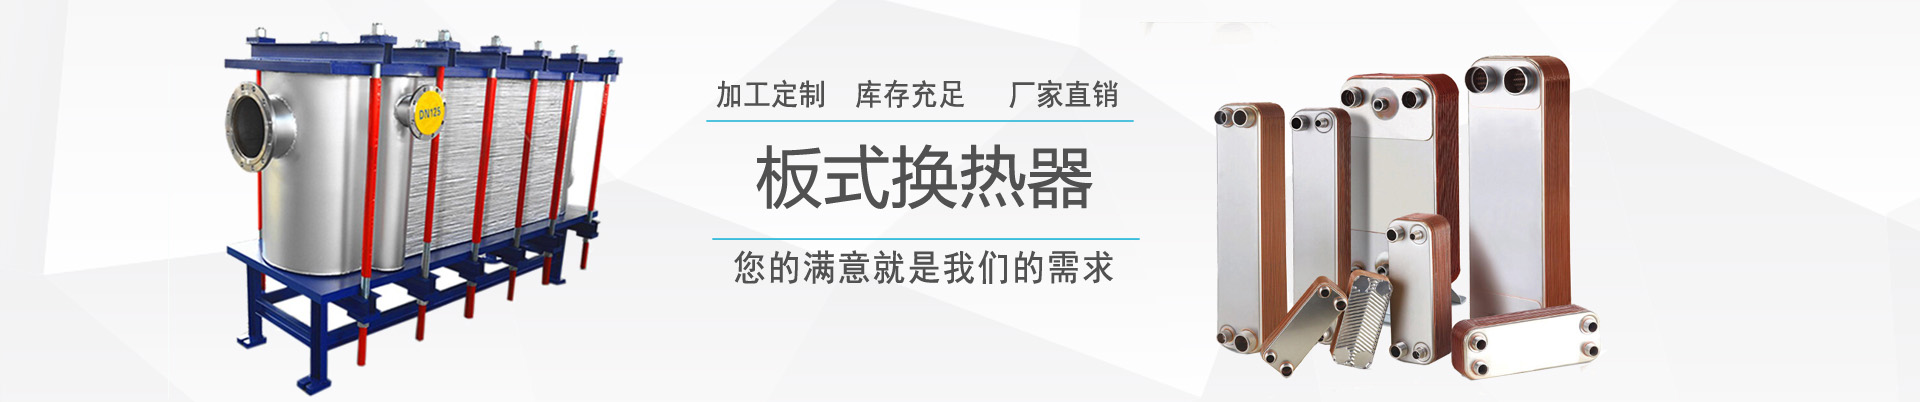 專題報道 - 新聞中心 - ,換熱器,板式換熱器,換熱器機組,上海將星化工設備有限公司